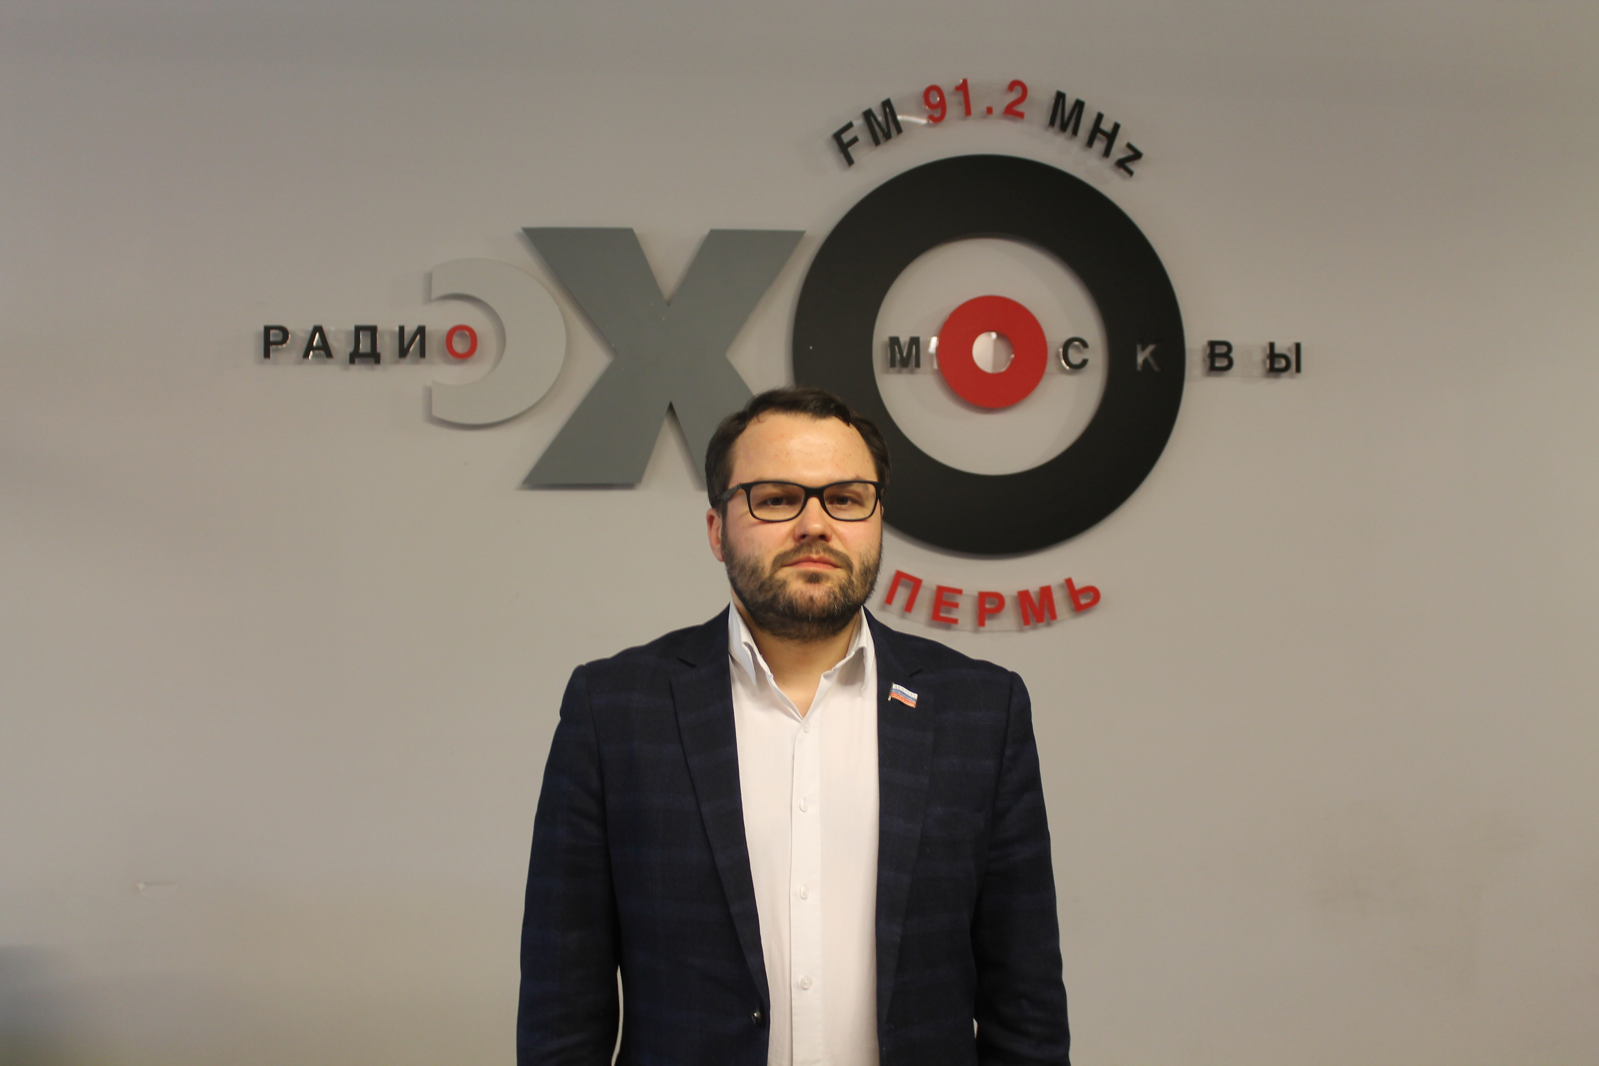 Александр Григоренко: «Никаких предпосылок для увеличения налогового бремени нет. Необходимо не спешить с рассмотрением уже внесенных в Законодательное Собрание законопроектов»